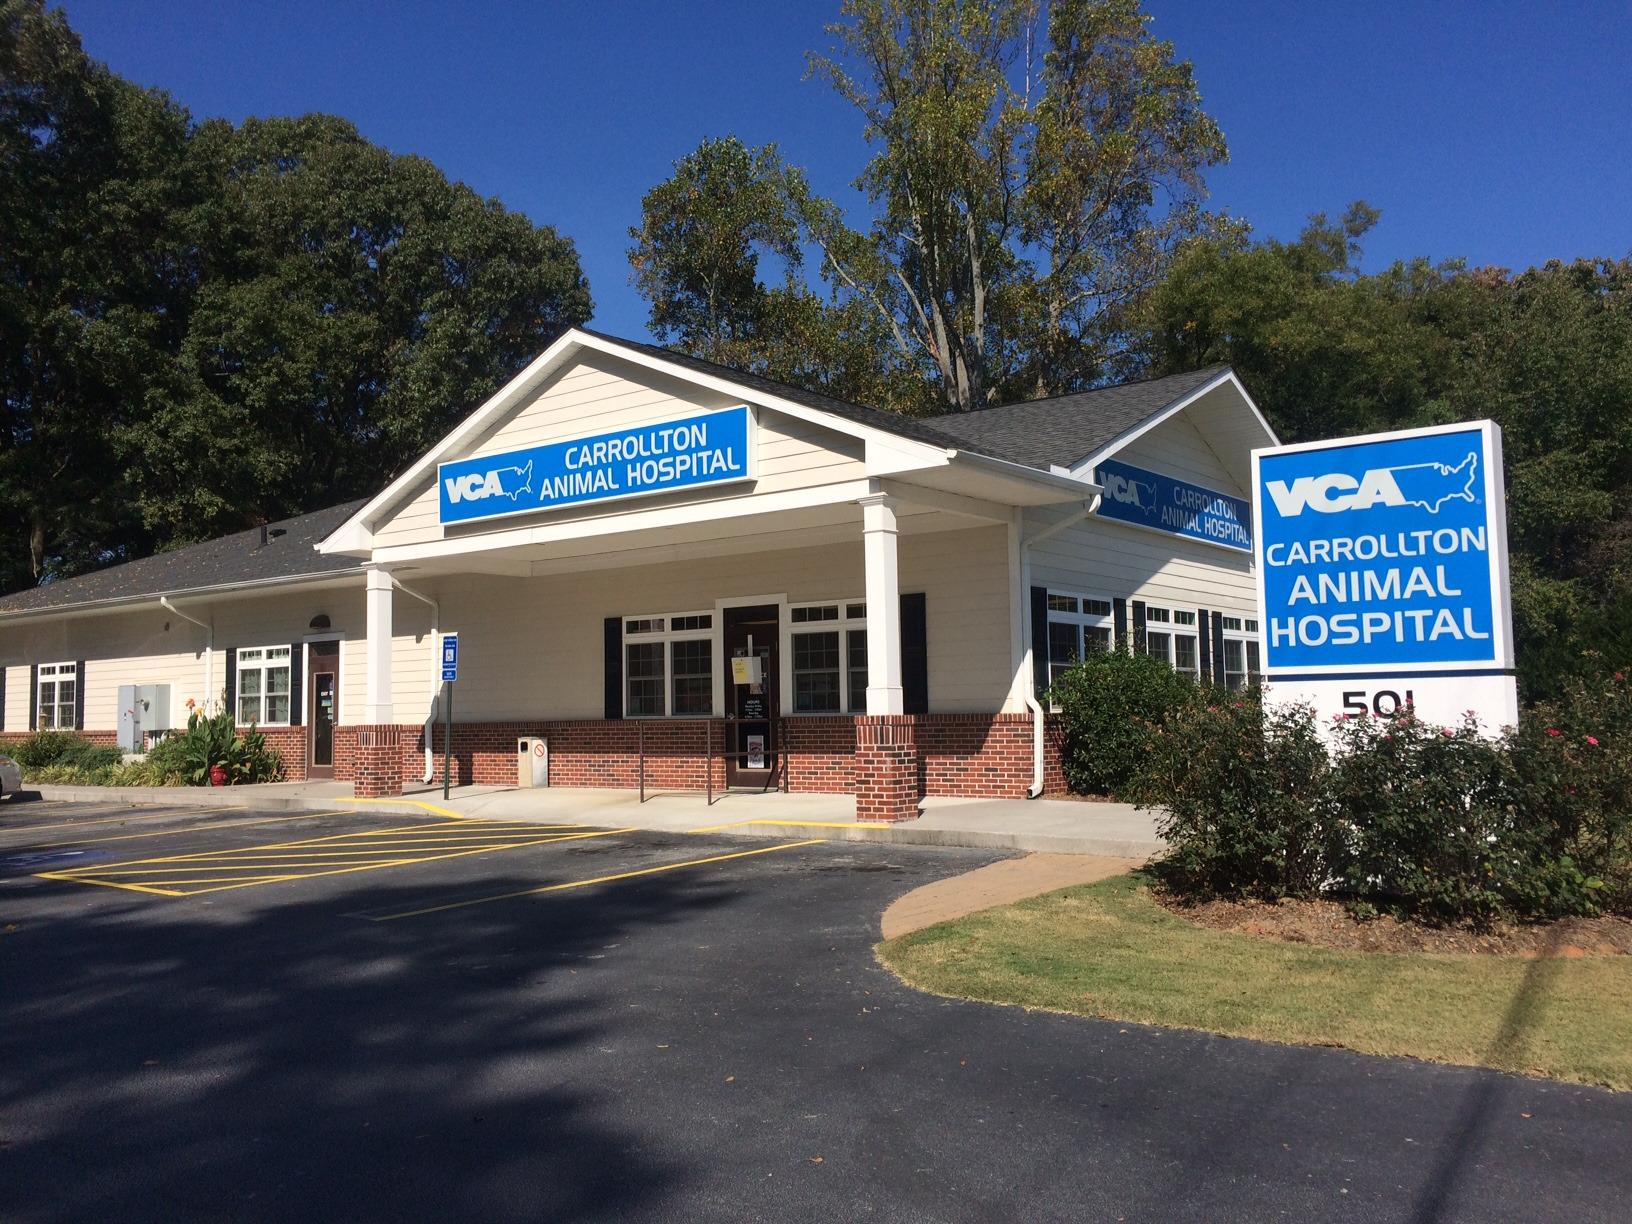 VCA Carrollton Animal Hospital Coupons near me in ...